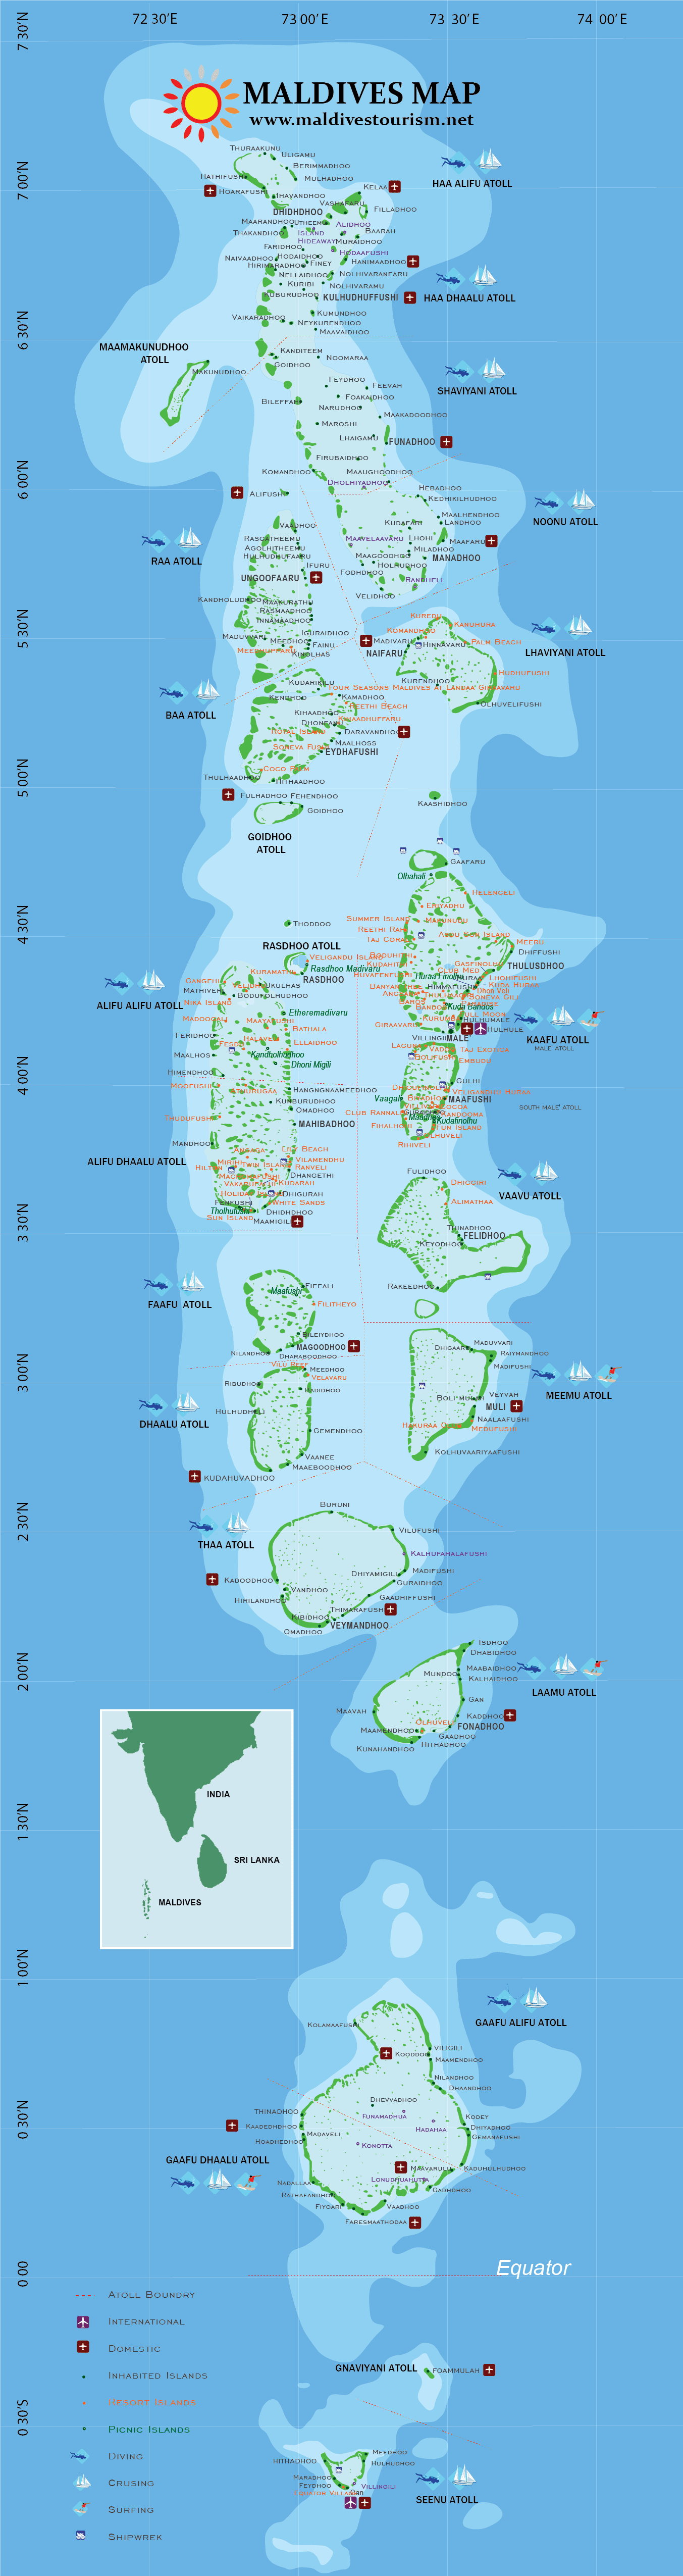 Karte der Malediven